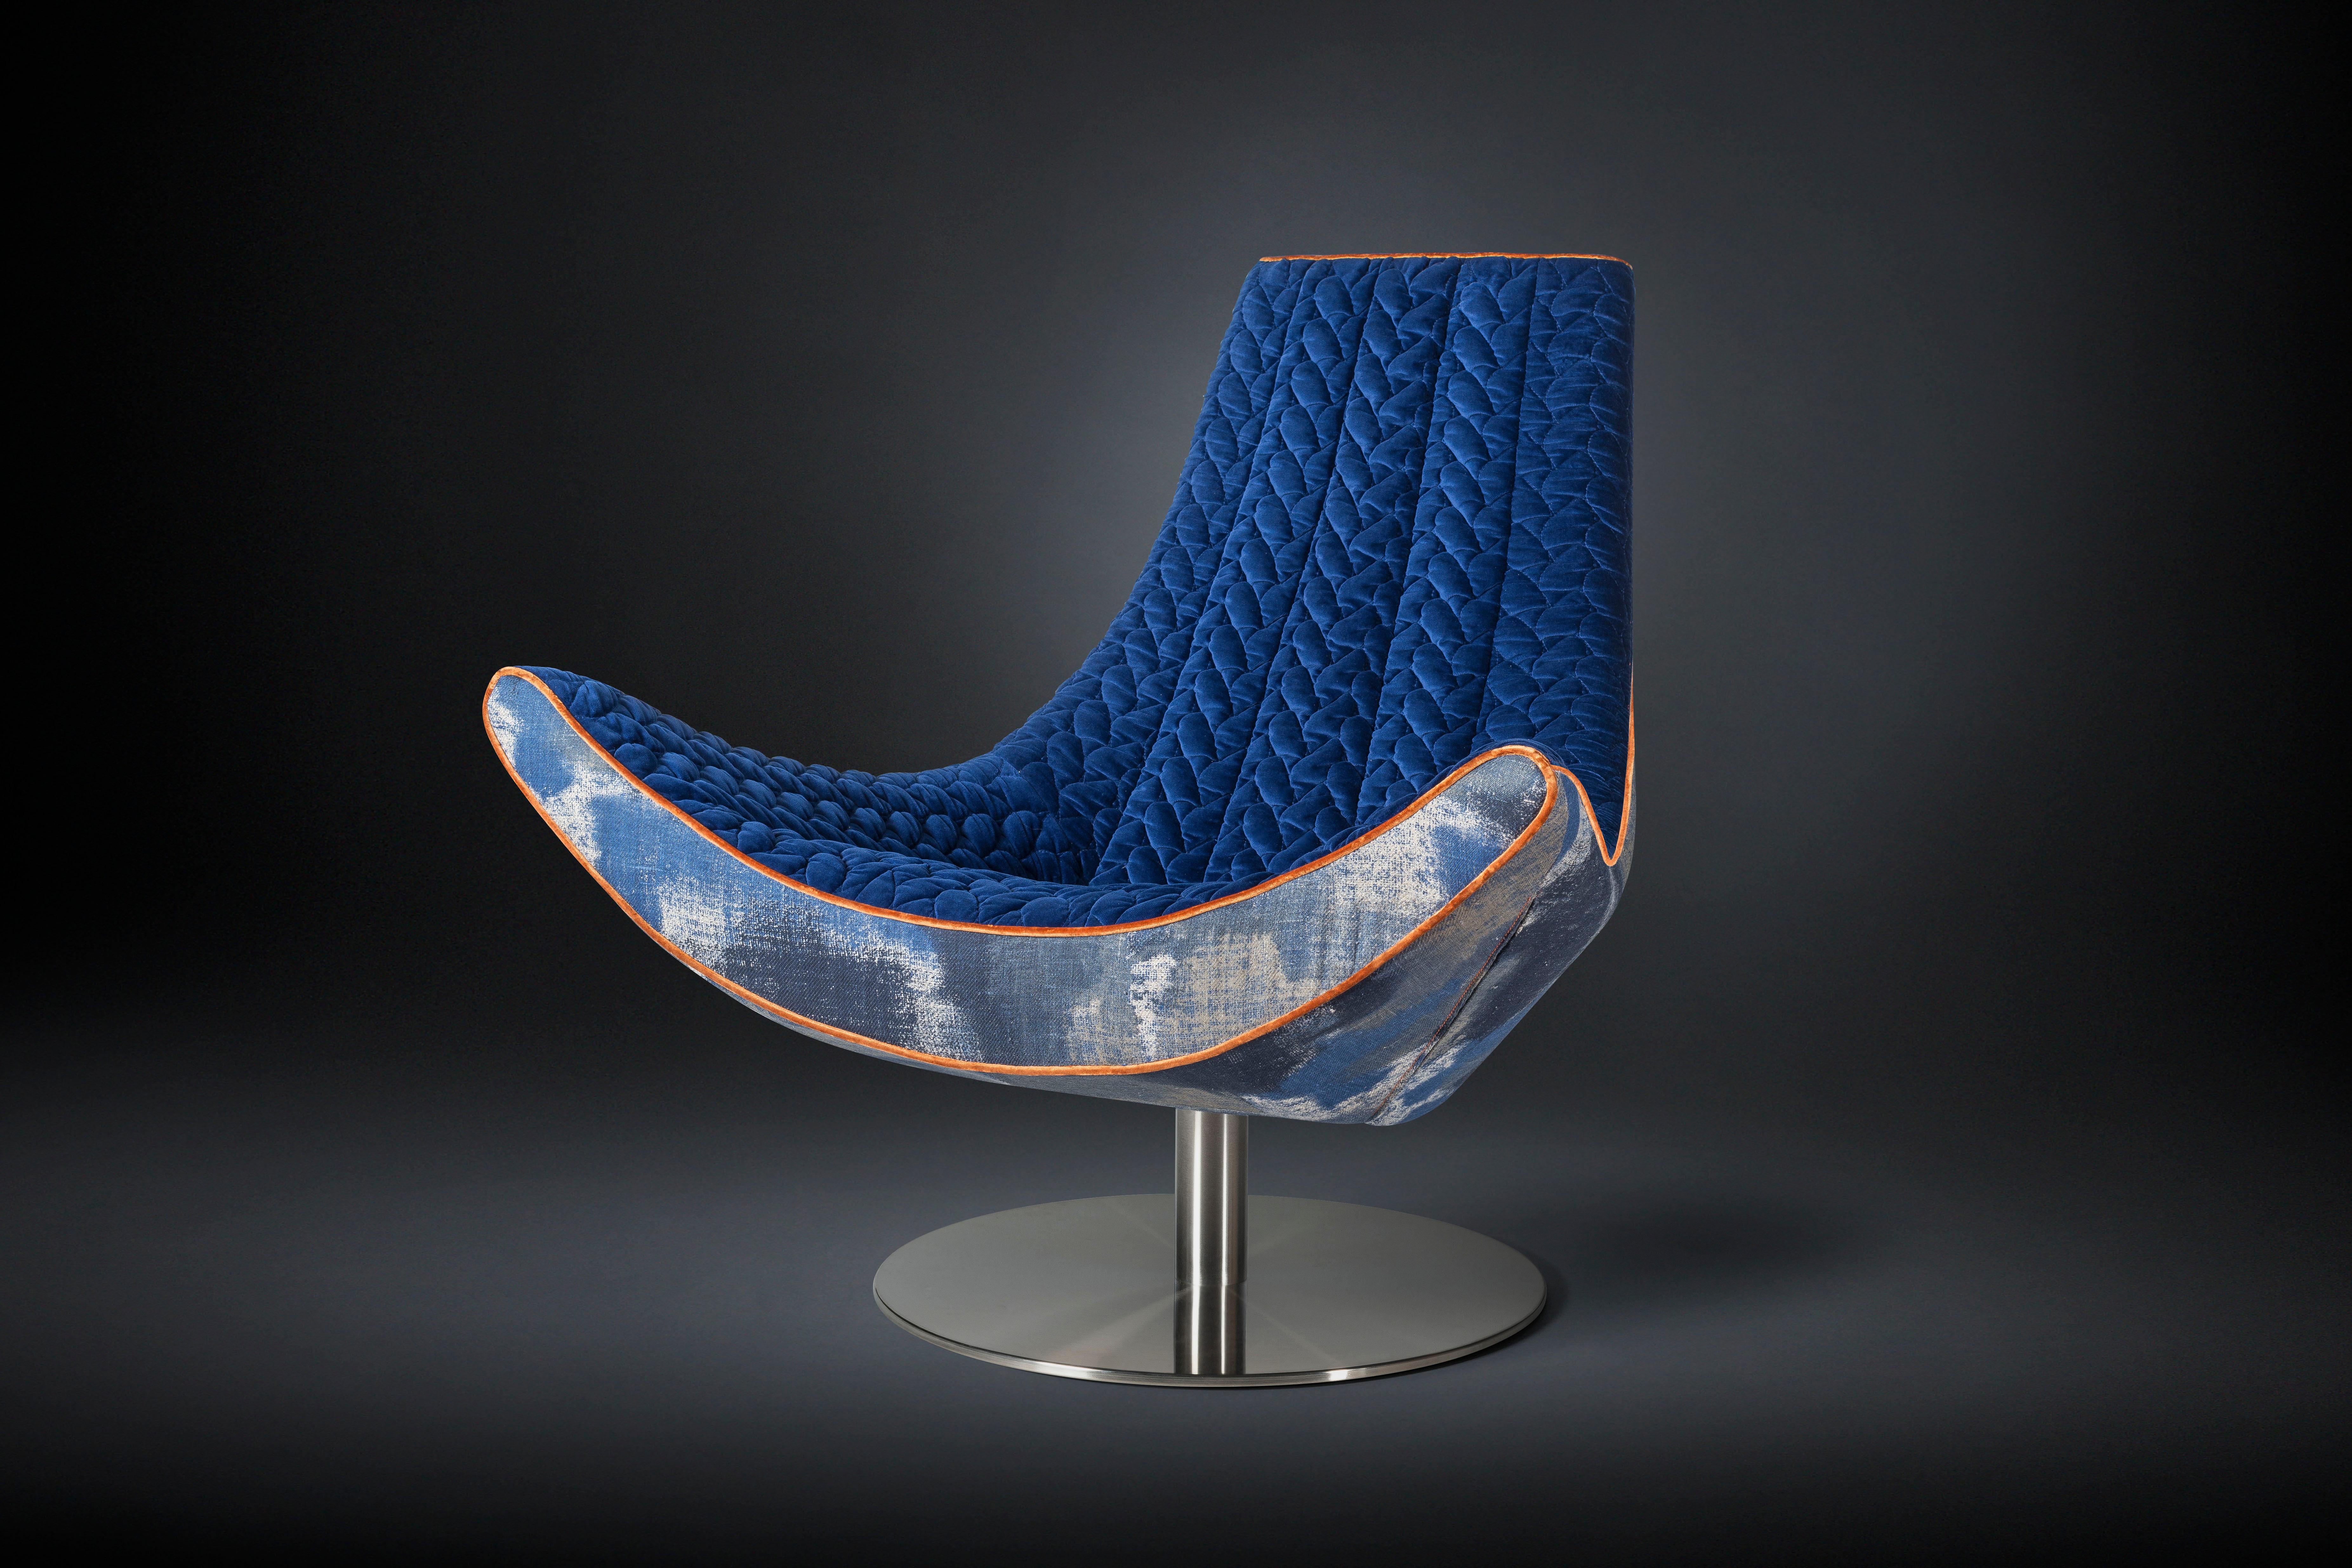 fauteuil pivotant design italien